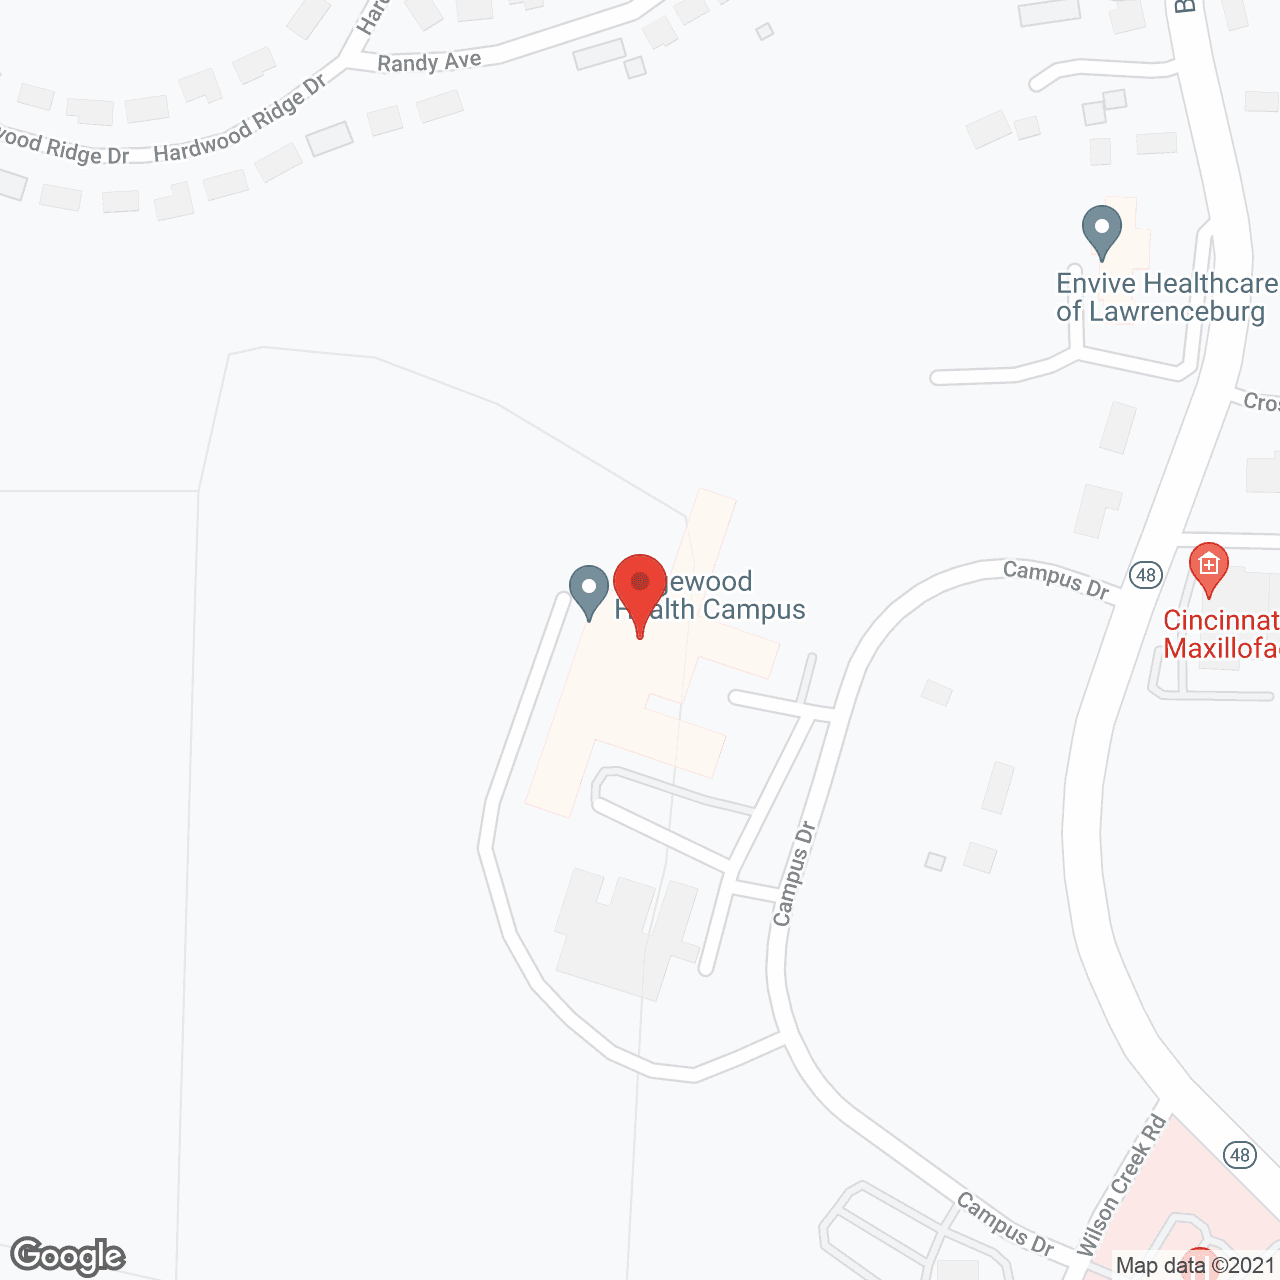 RidgeWood Health Campus in google map